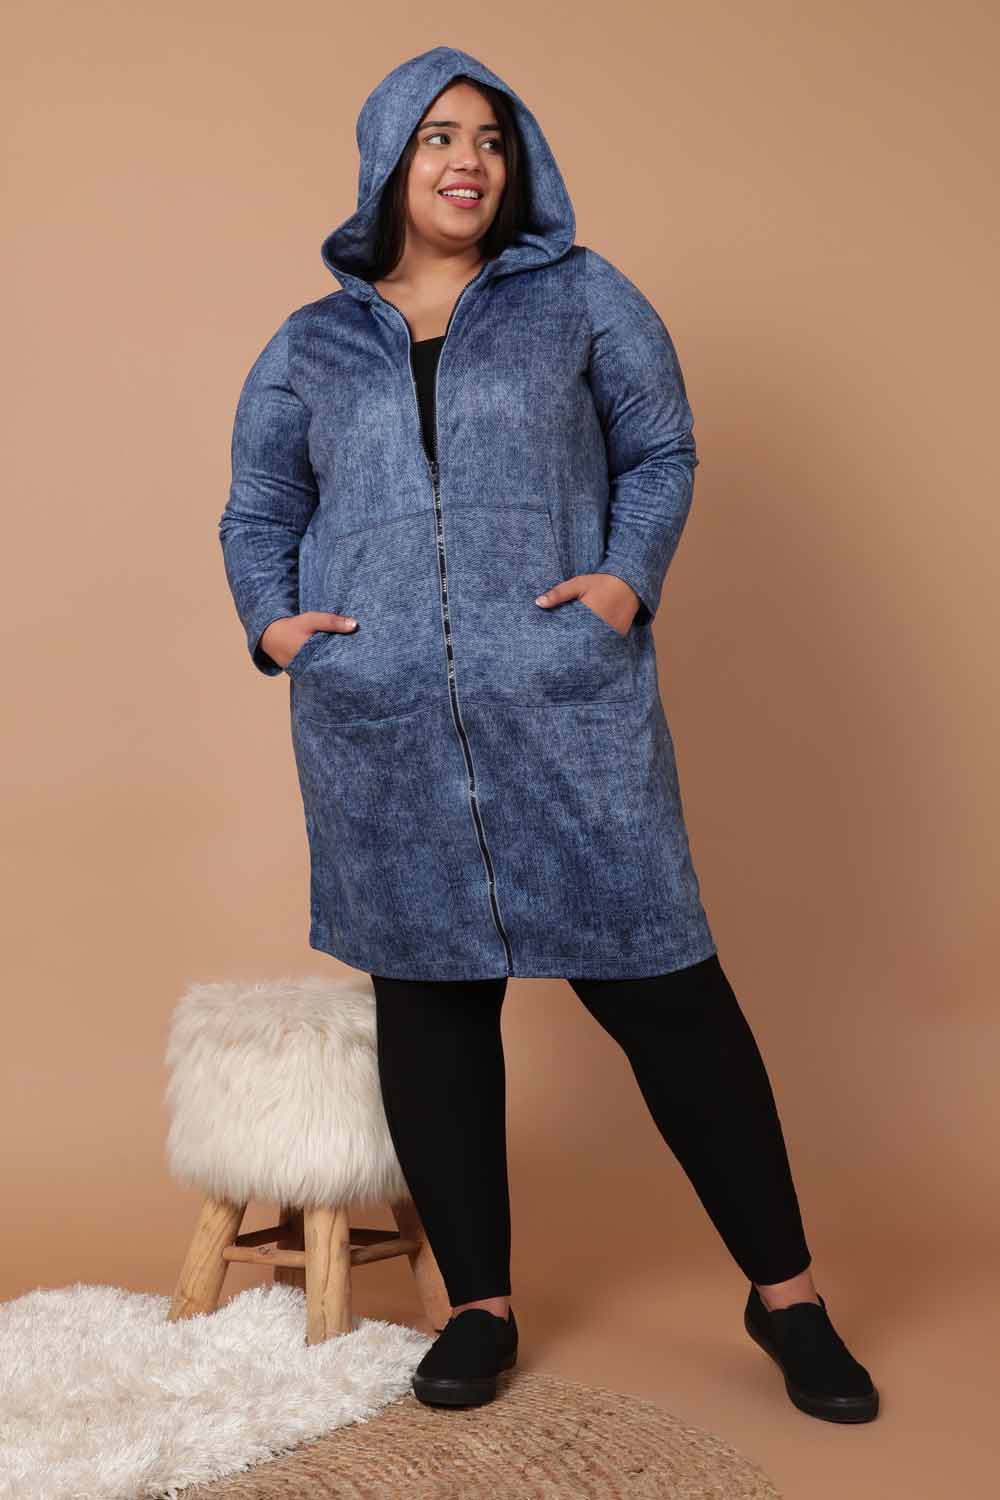 Plus Size Winter Jackets for Women Online